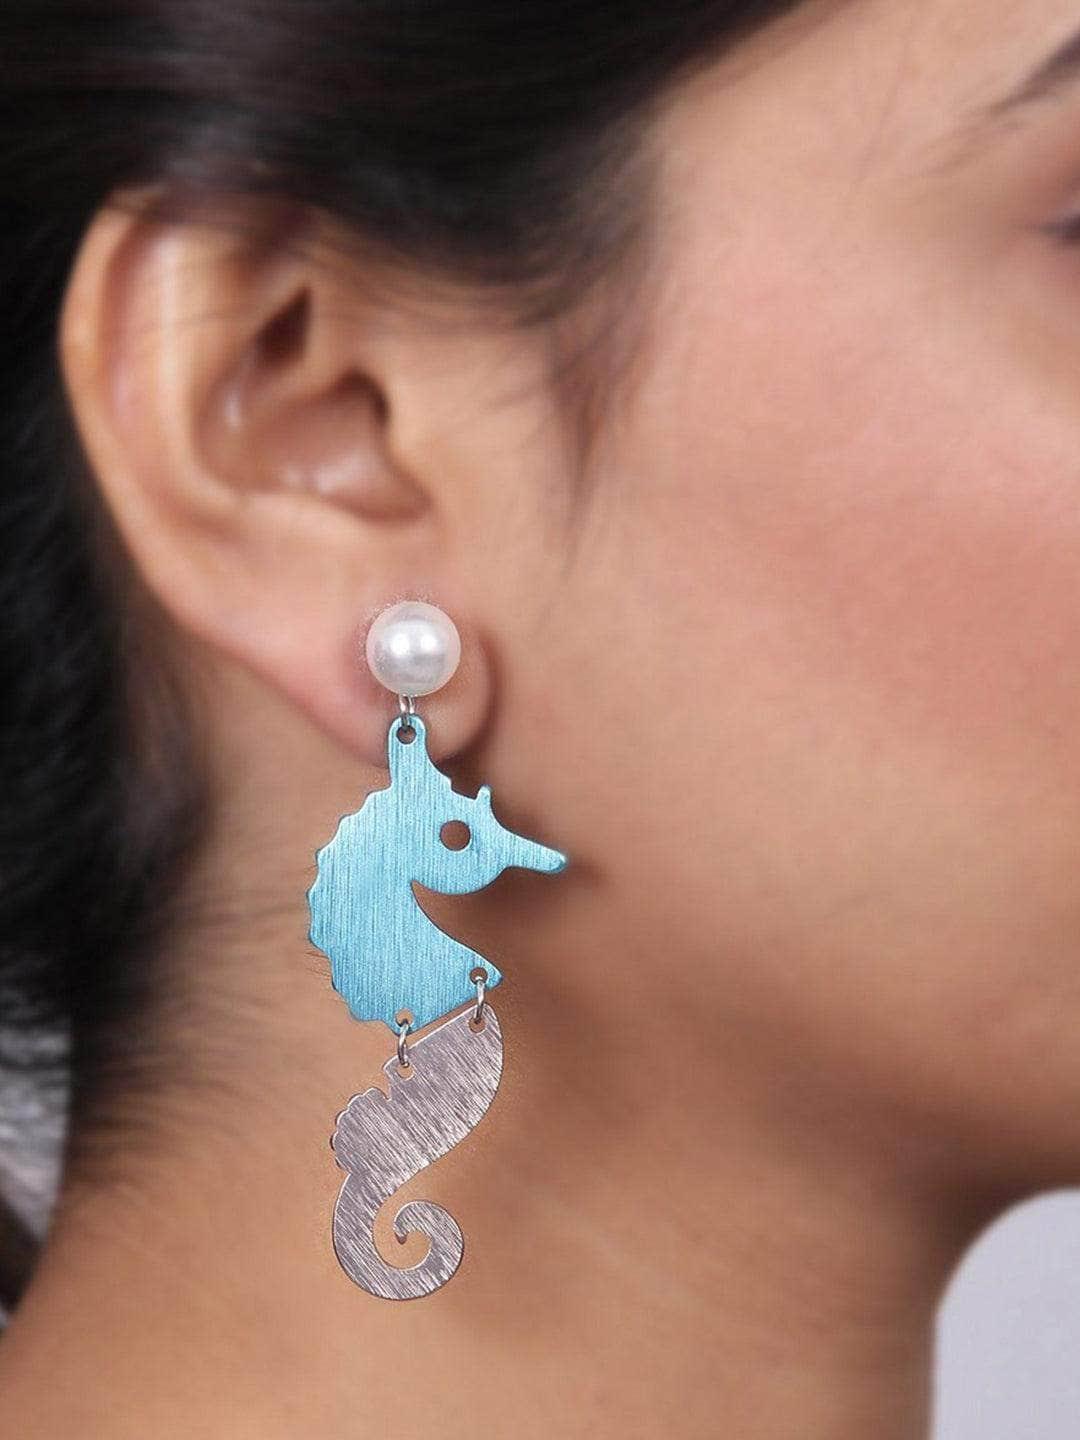 Ishhaara Sea Horse Earrings Blue